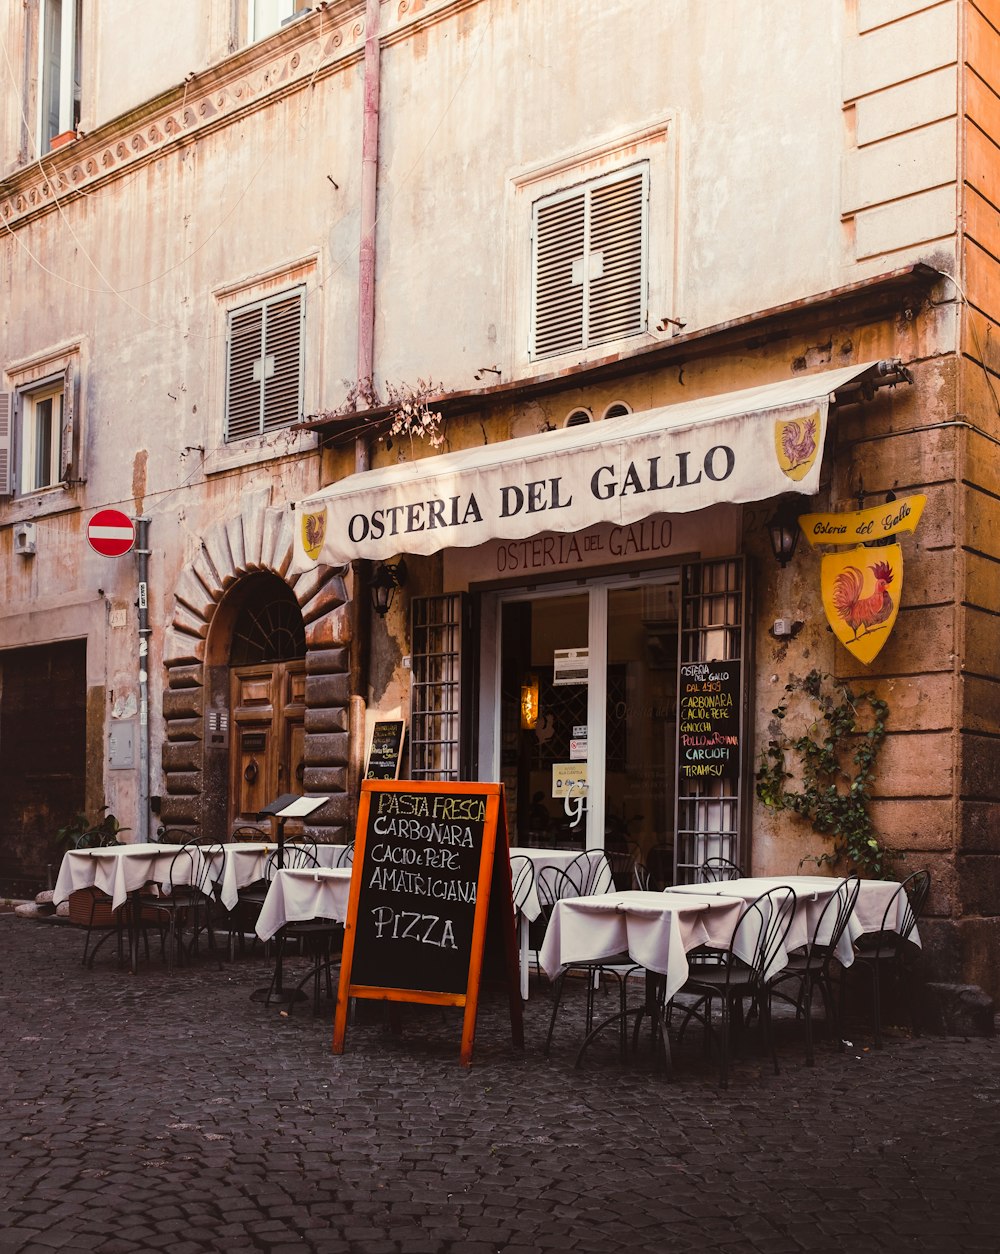 a restaurant called osteria del gallo on a cobblestone street